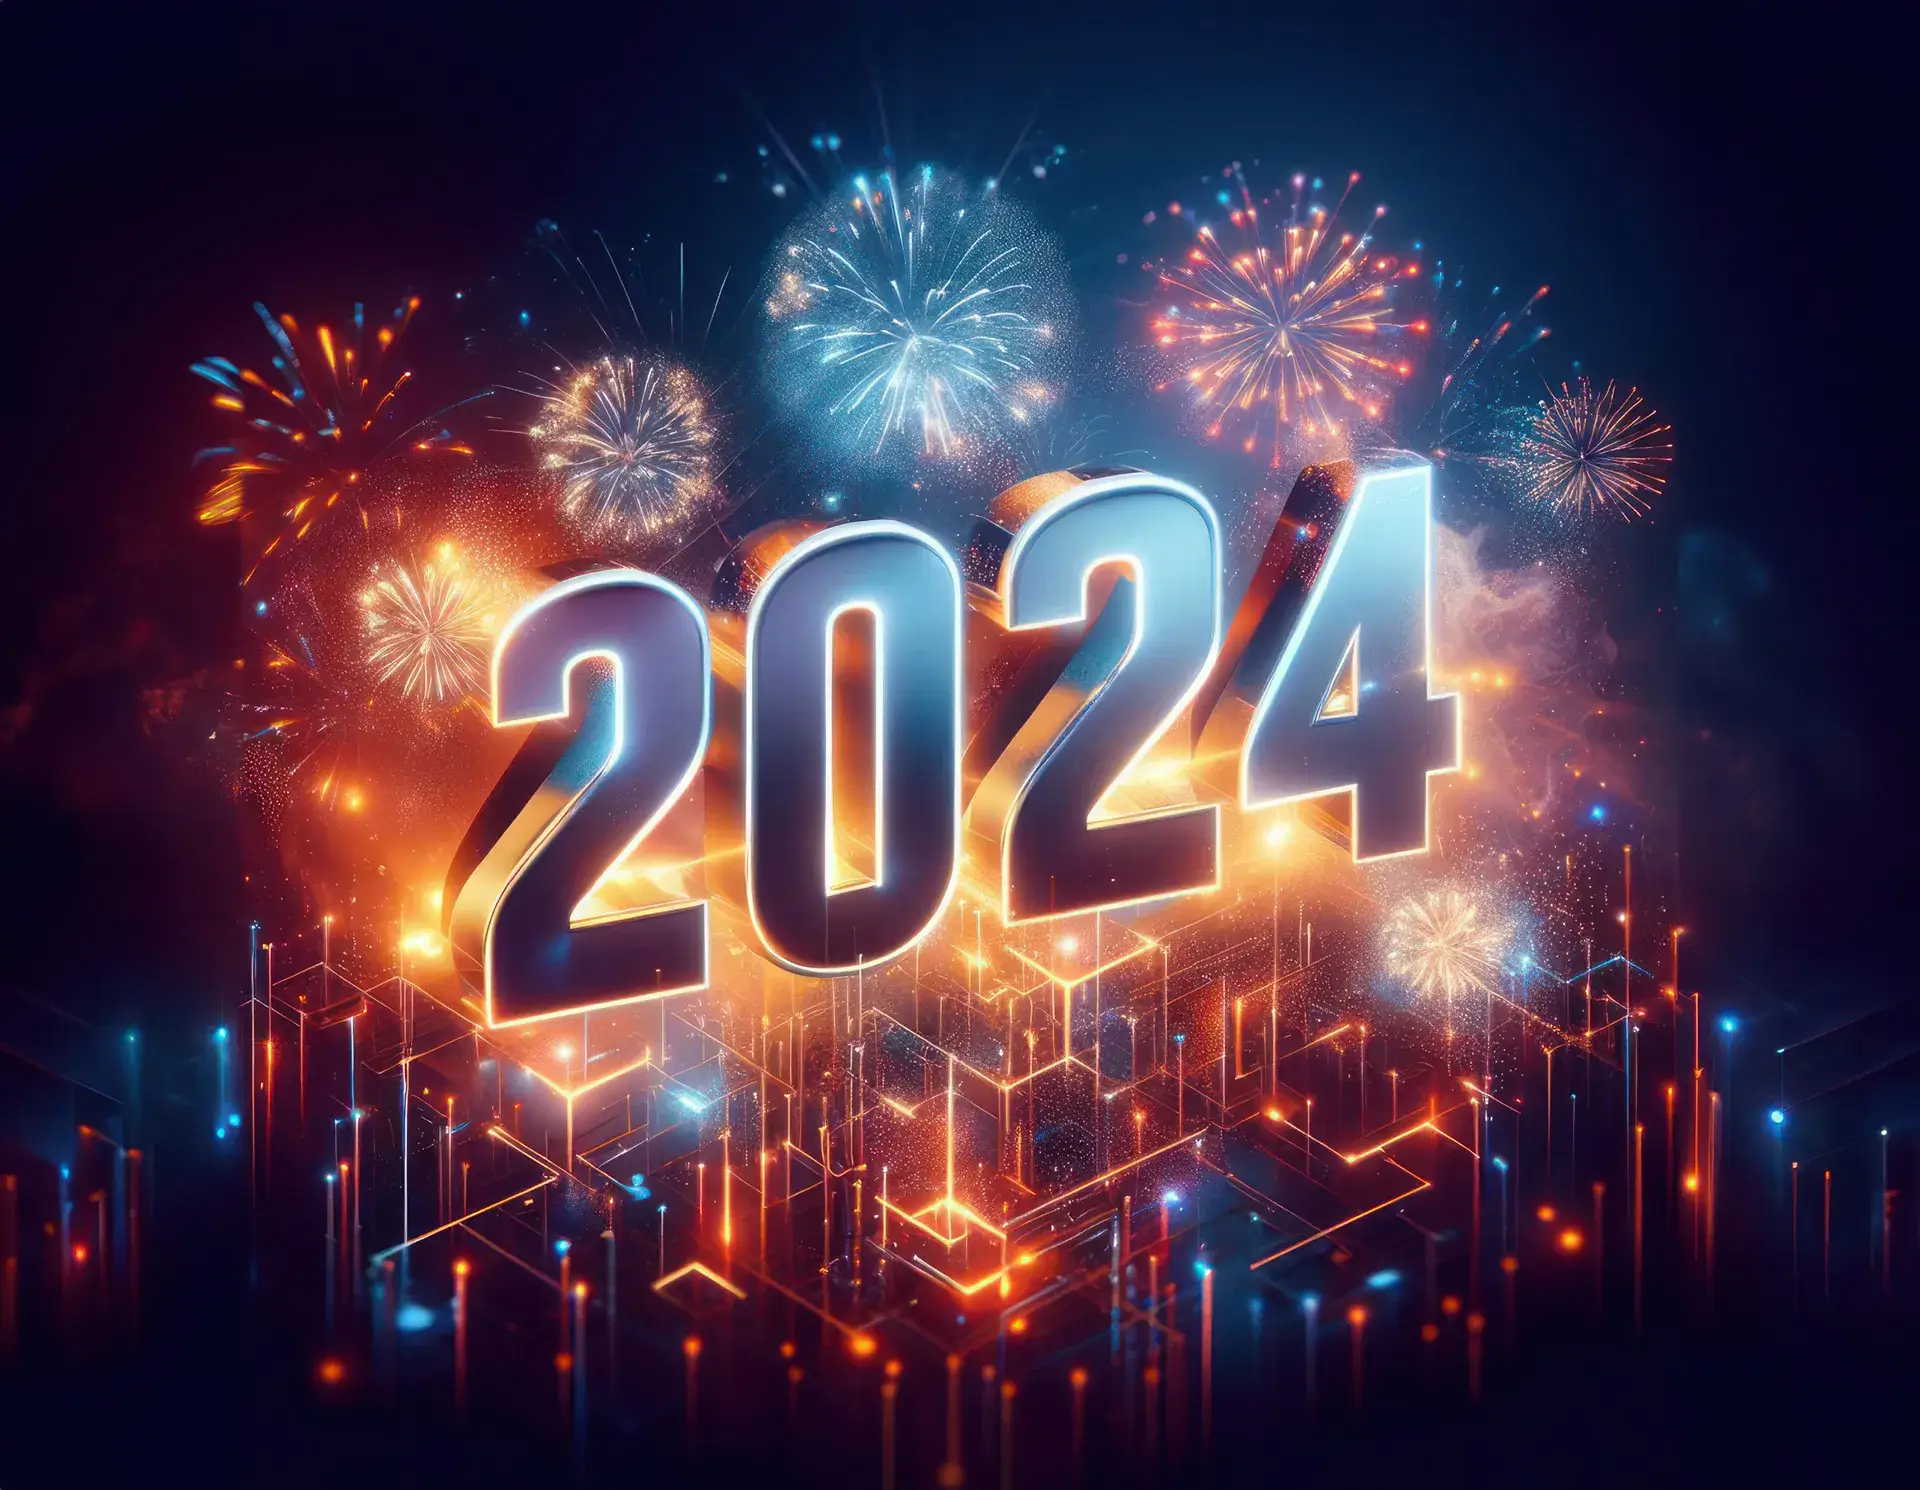 Einen guten Start in ein gesundes und friedvolles Jahr 2024